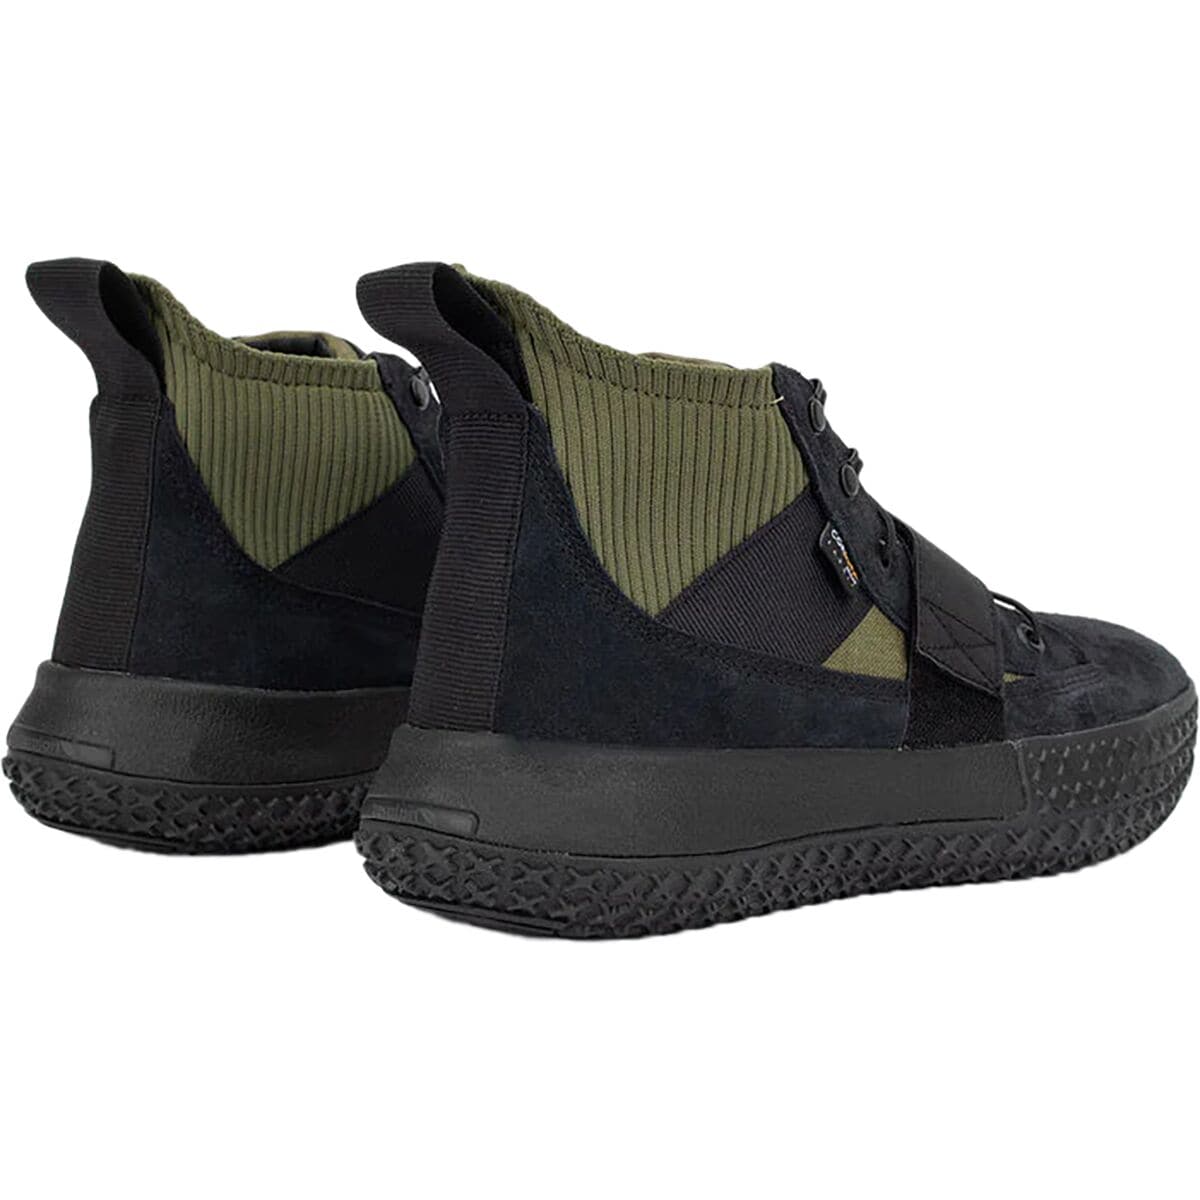 Brandblack Milspec Evo Shoe - Men's - Footwear